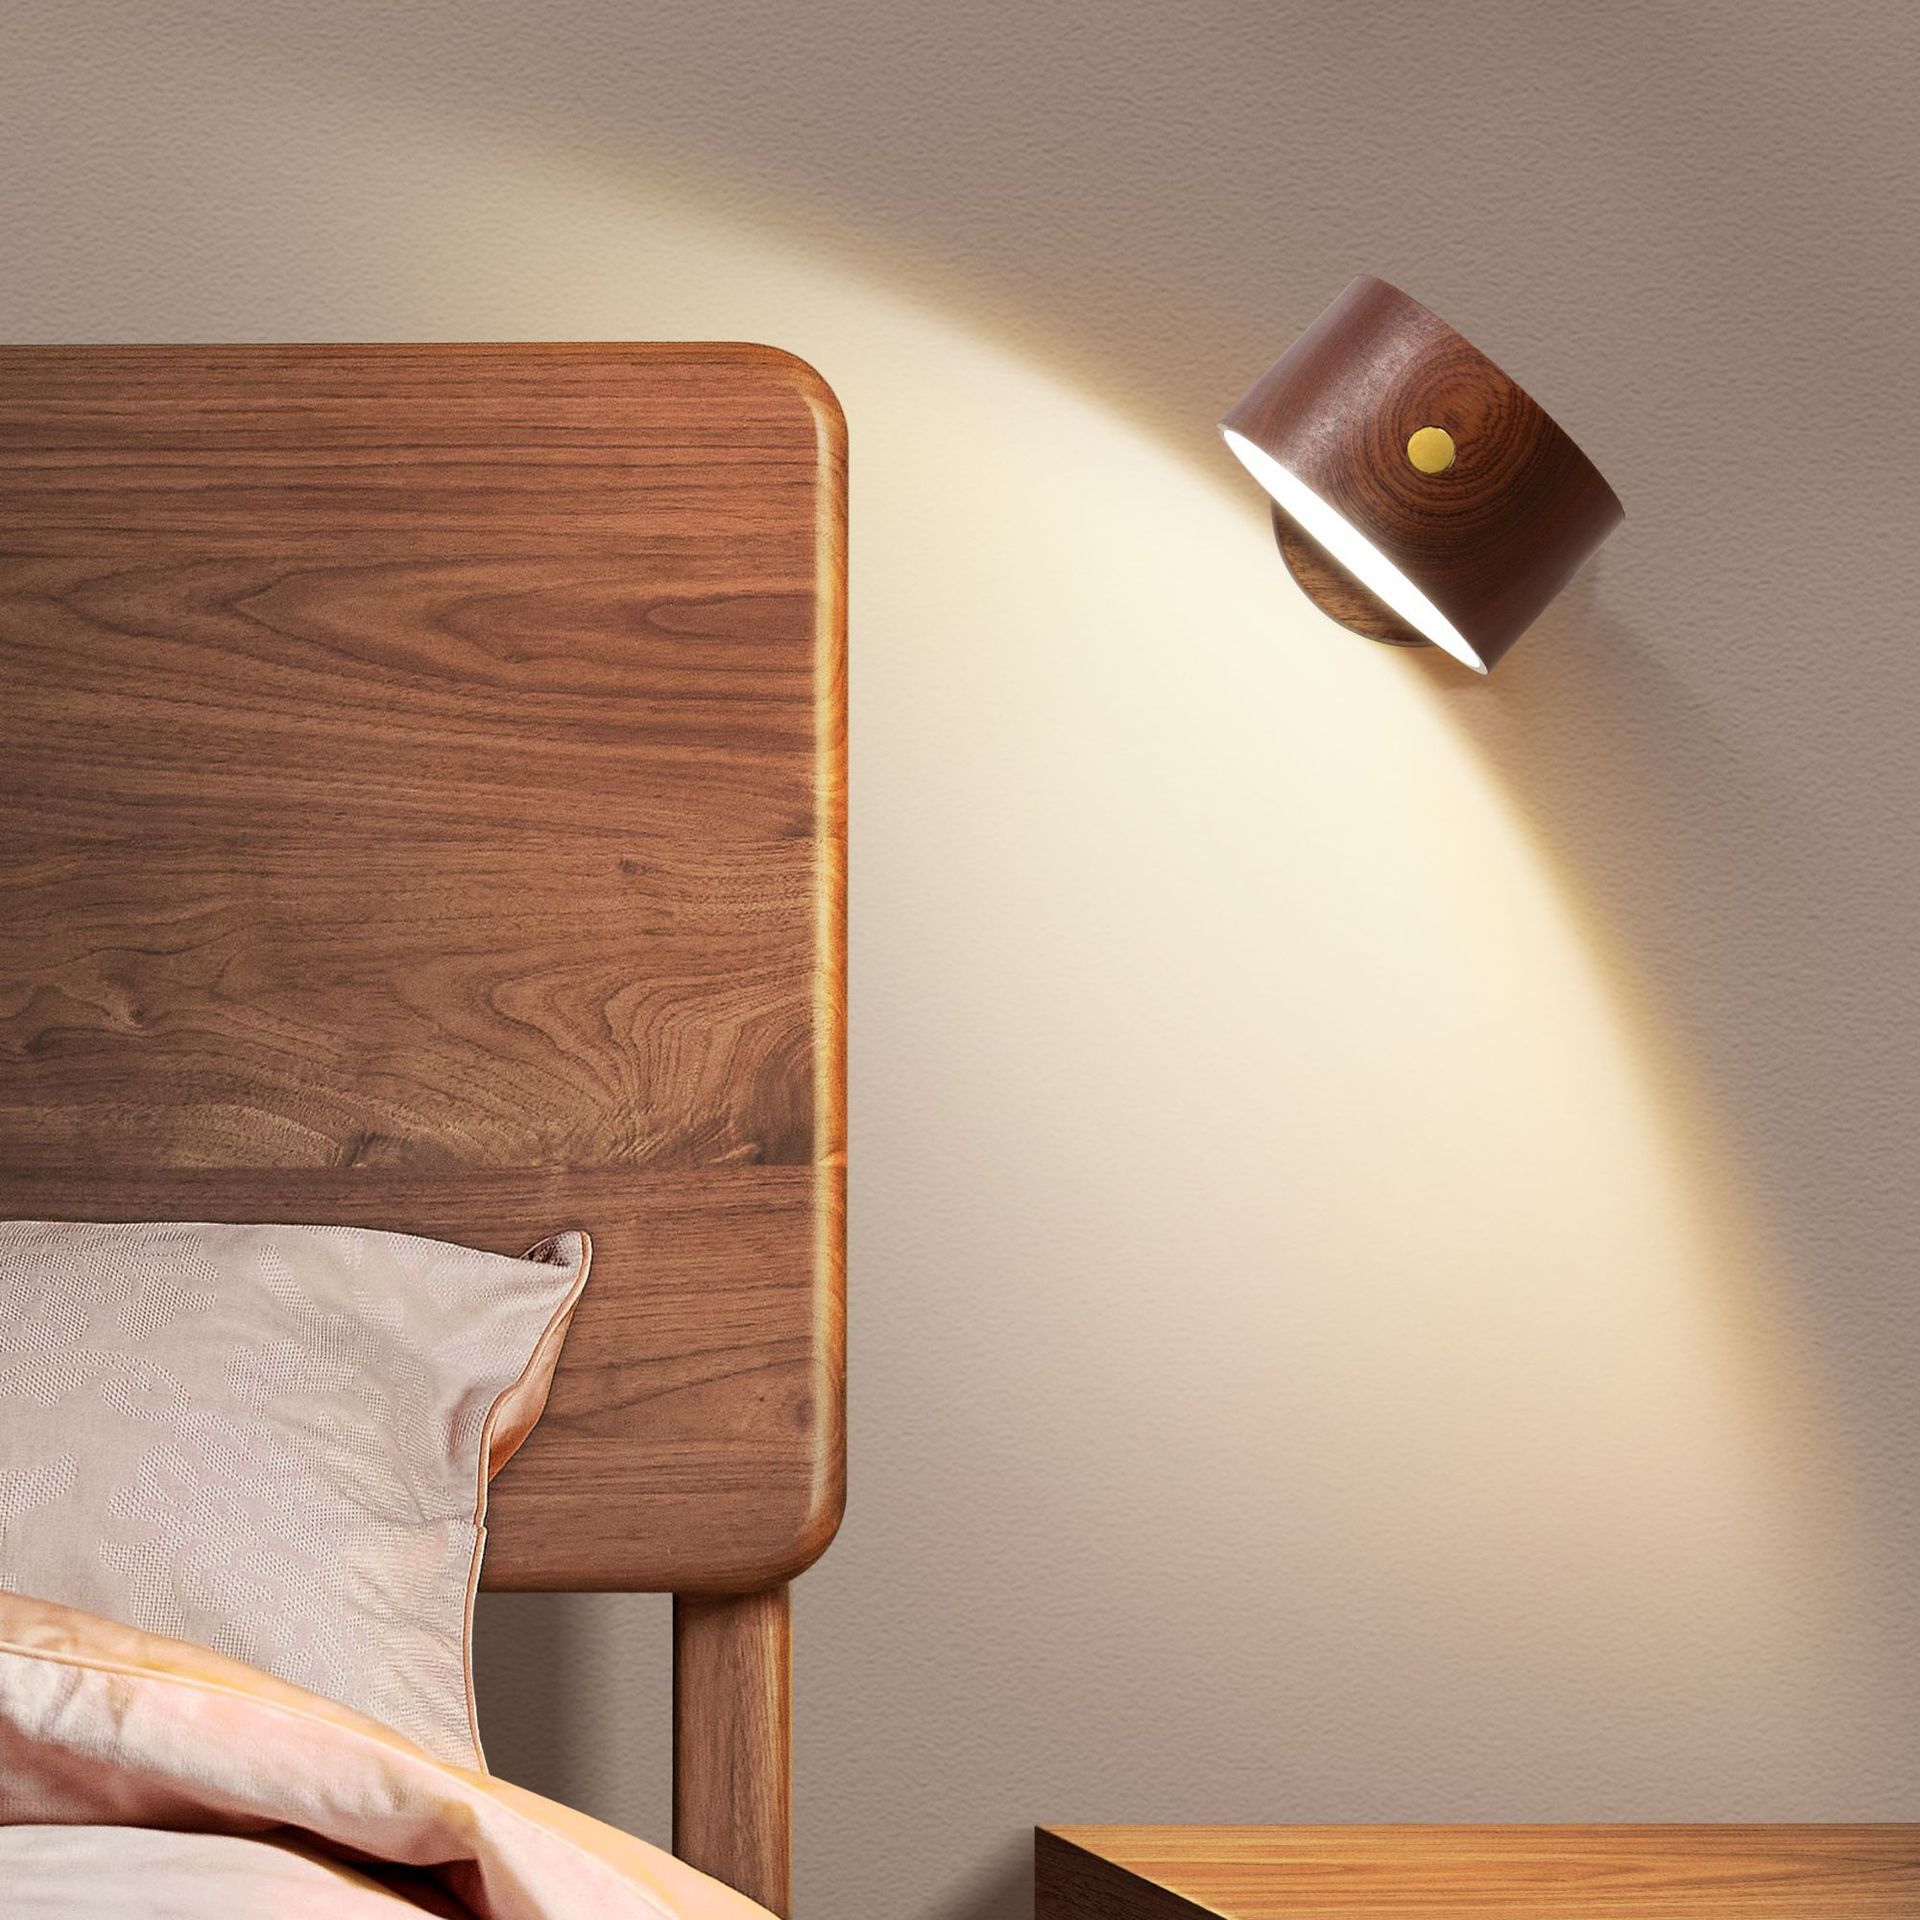 免運 床頭燈 創意木質床頭臺燈USB充電壁燈LED觸摸磁吸走道護眼調光氛圍床頭燈